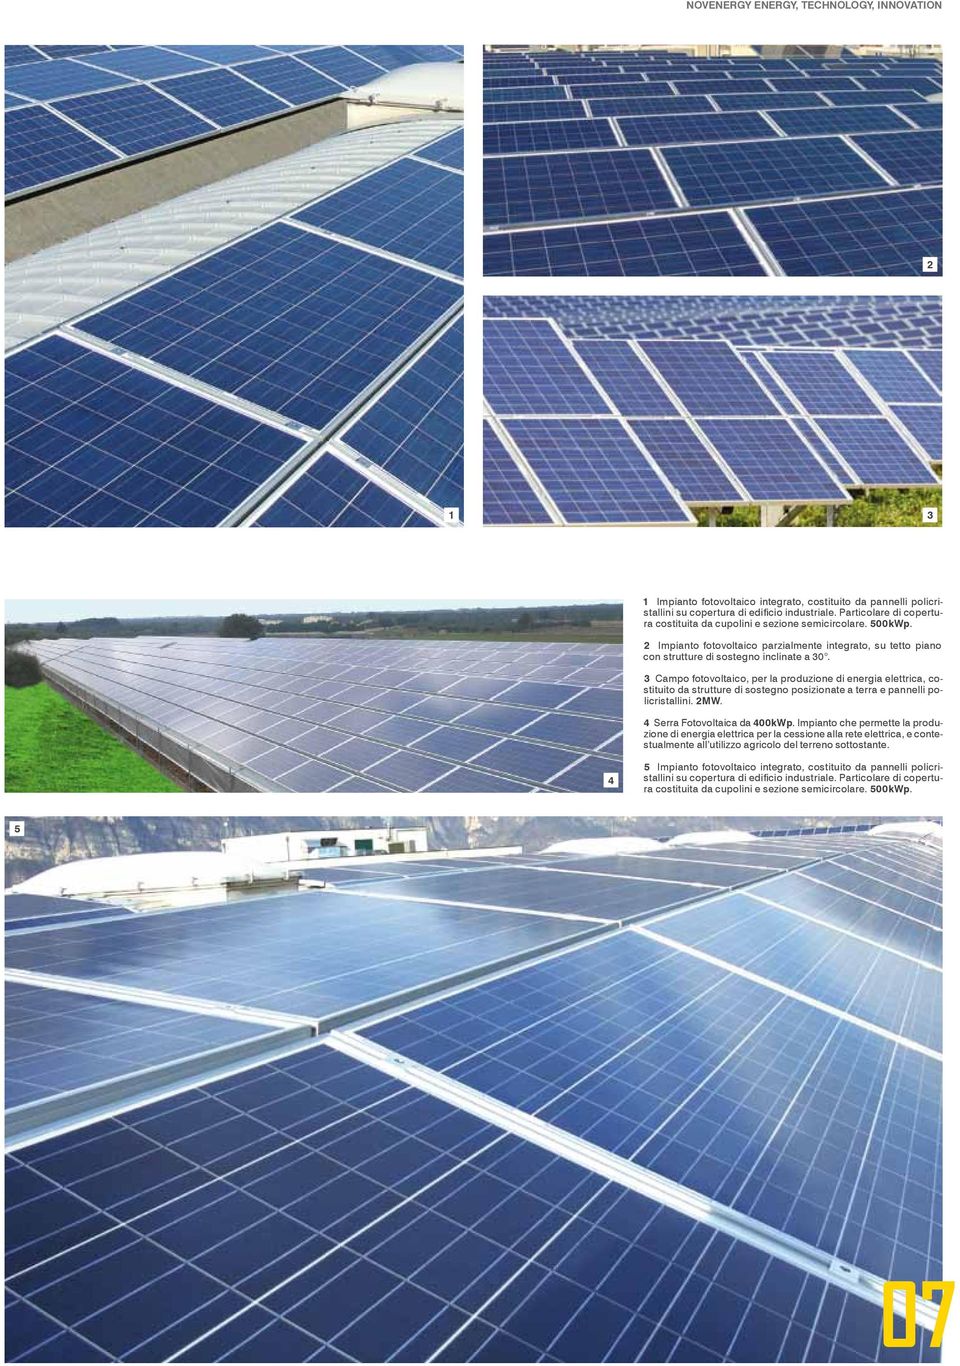 3 Campo fotovoltaico, per la produzione di energia elettrica, costituito da strutture di sostegno posizionate a terra e pannelli policristallini. 2MW. 4 Serra Fotovoltaica da 400kWp.